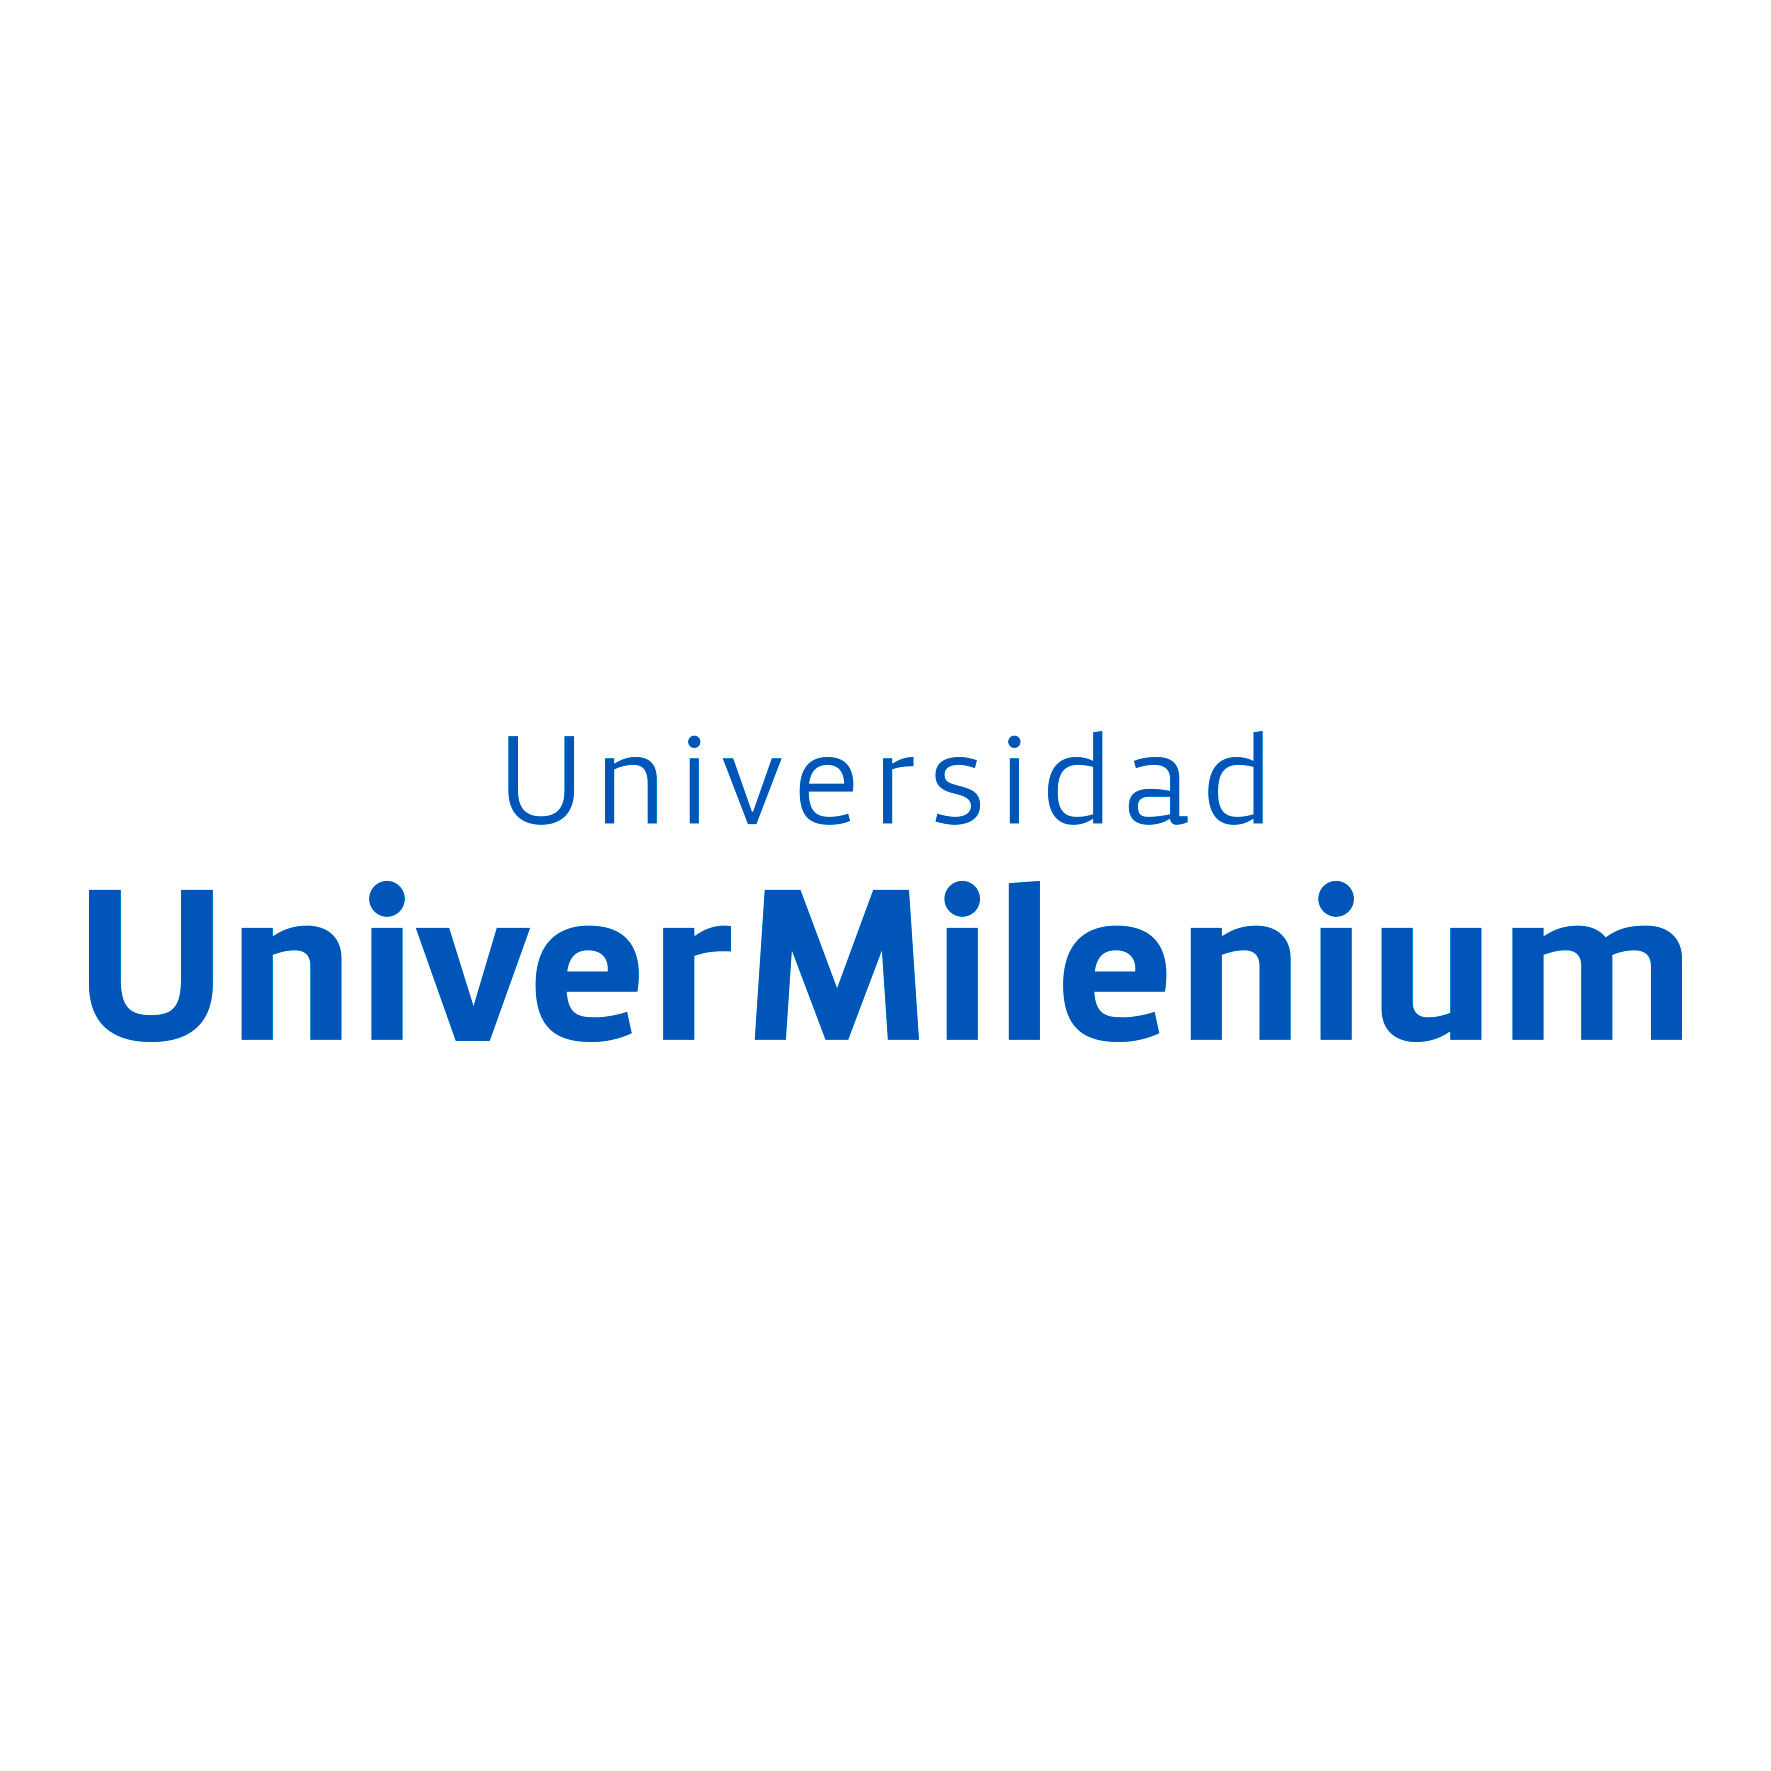 Universidad UniverMilenium